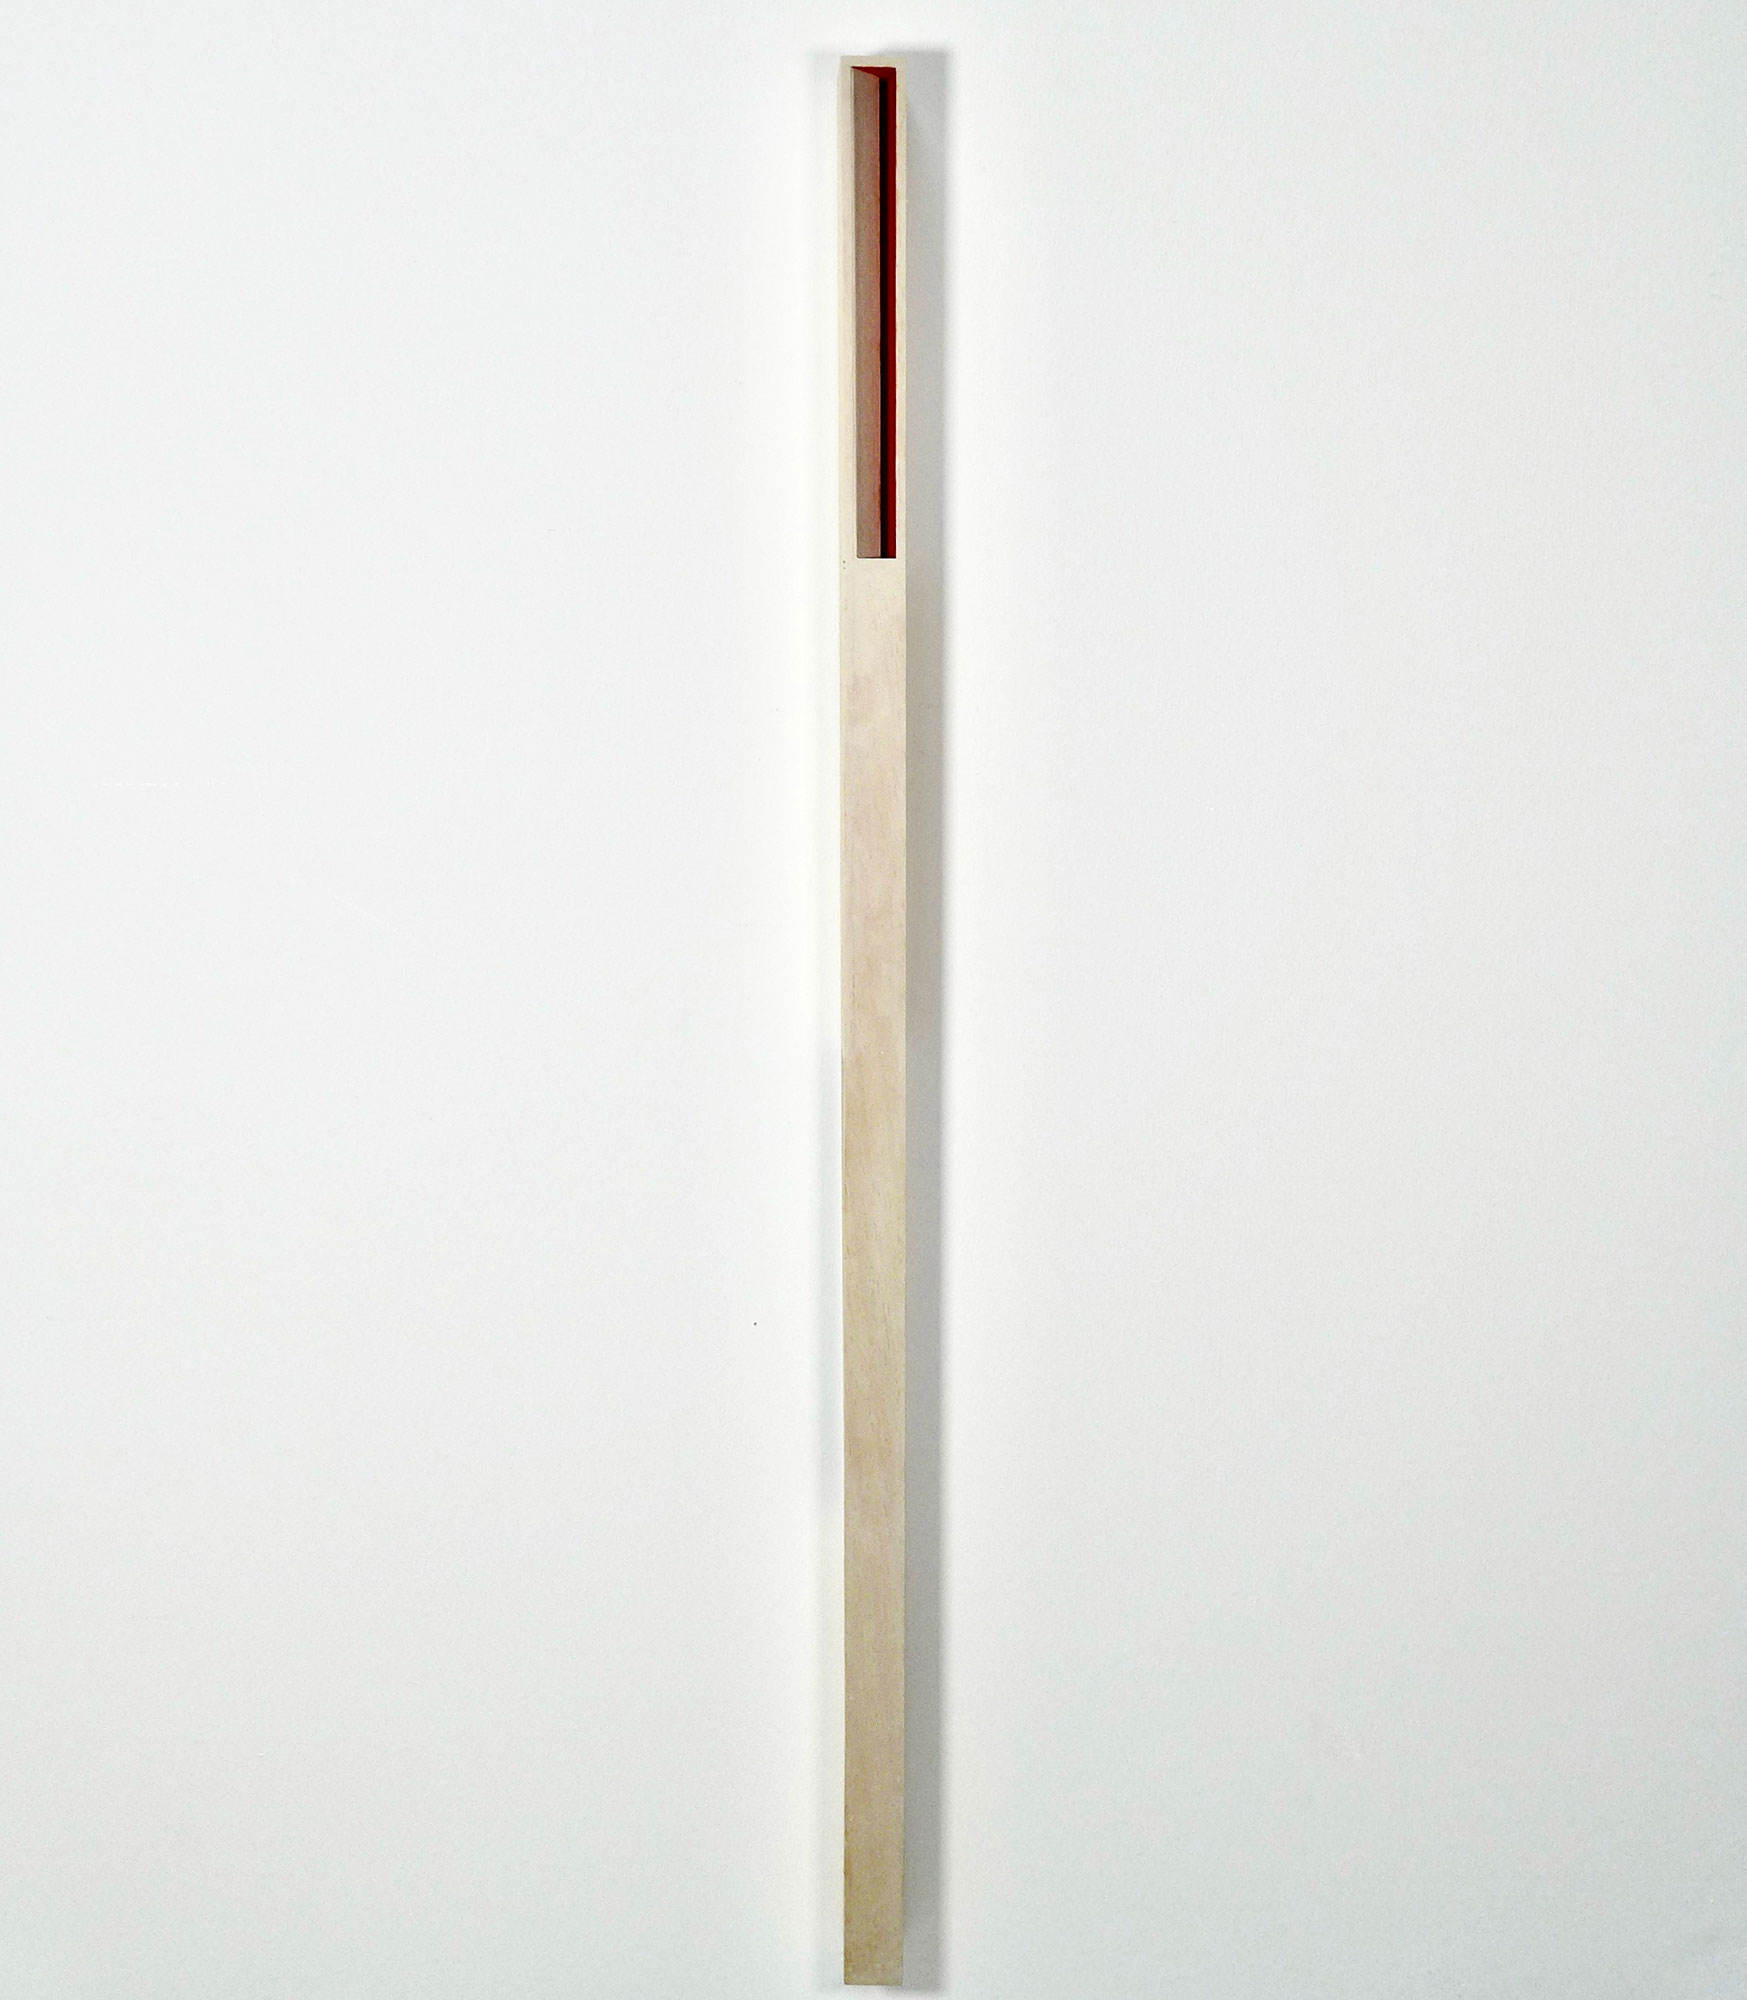 Kenneth Dingwall, Being, 2010, acrylic and gouache on hardwood, 105cm x 3.5cm x 4cm